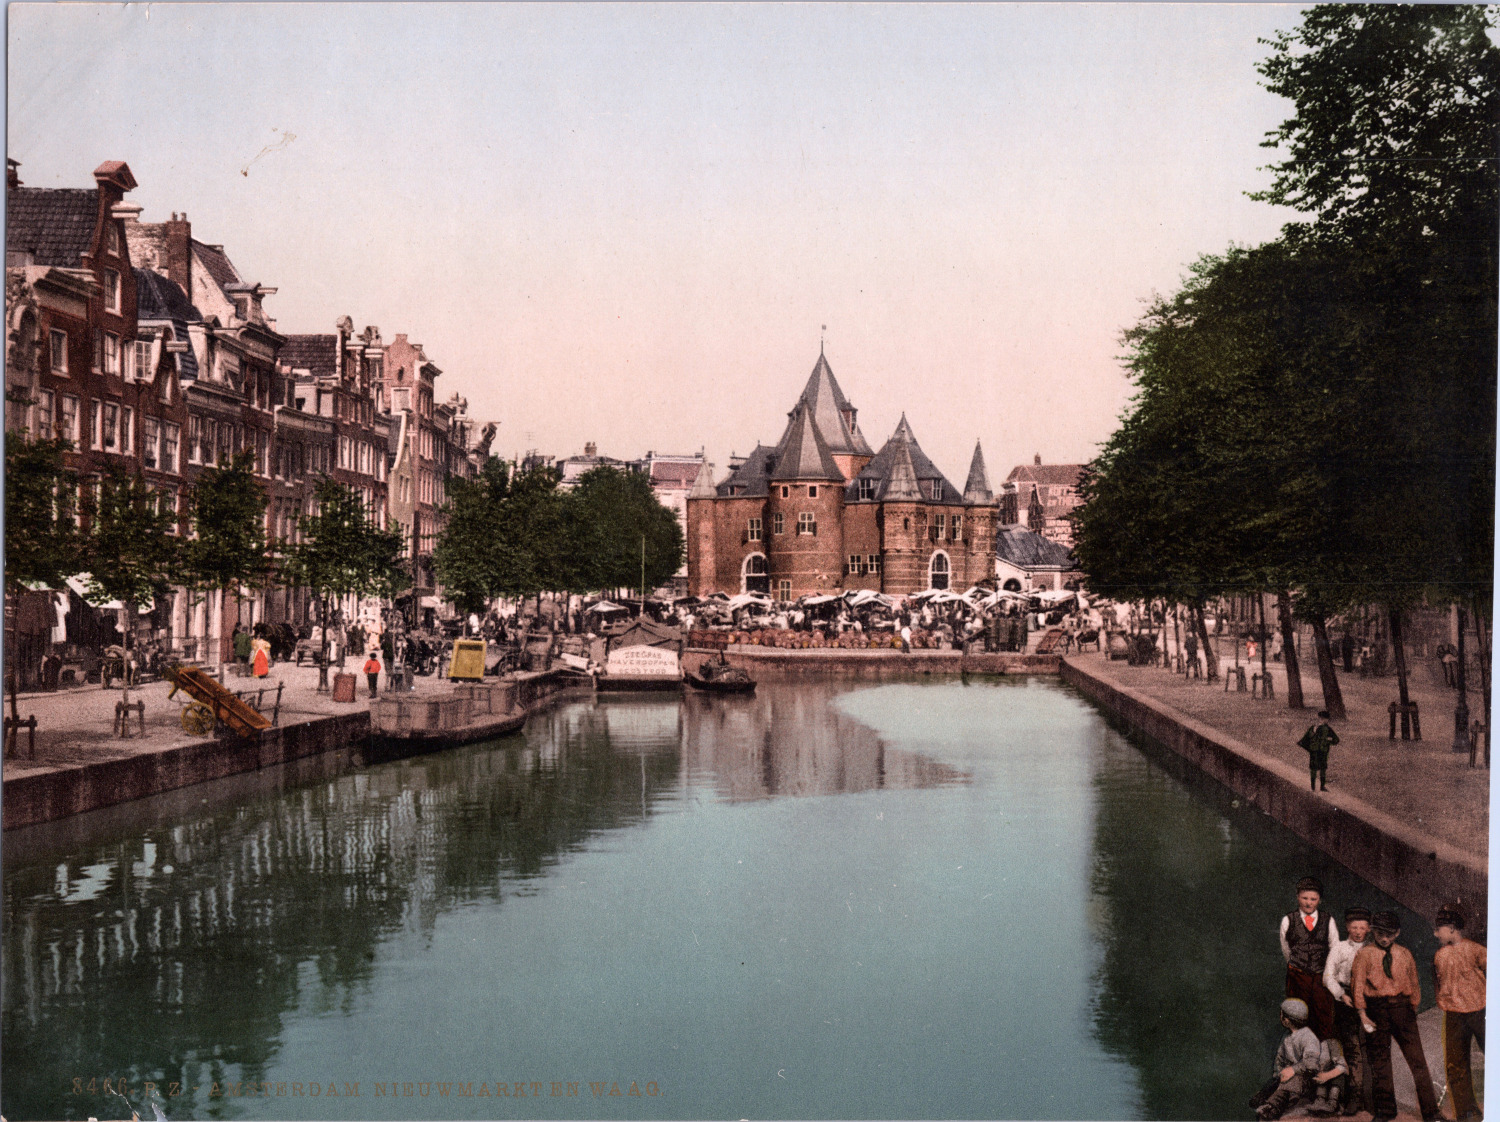 Nederland, Amsterdam. Nieuwmarkt en Libra. vintage print photochromie, vintage 